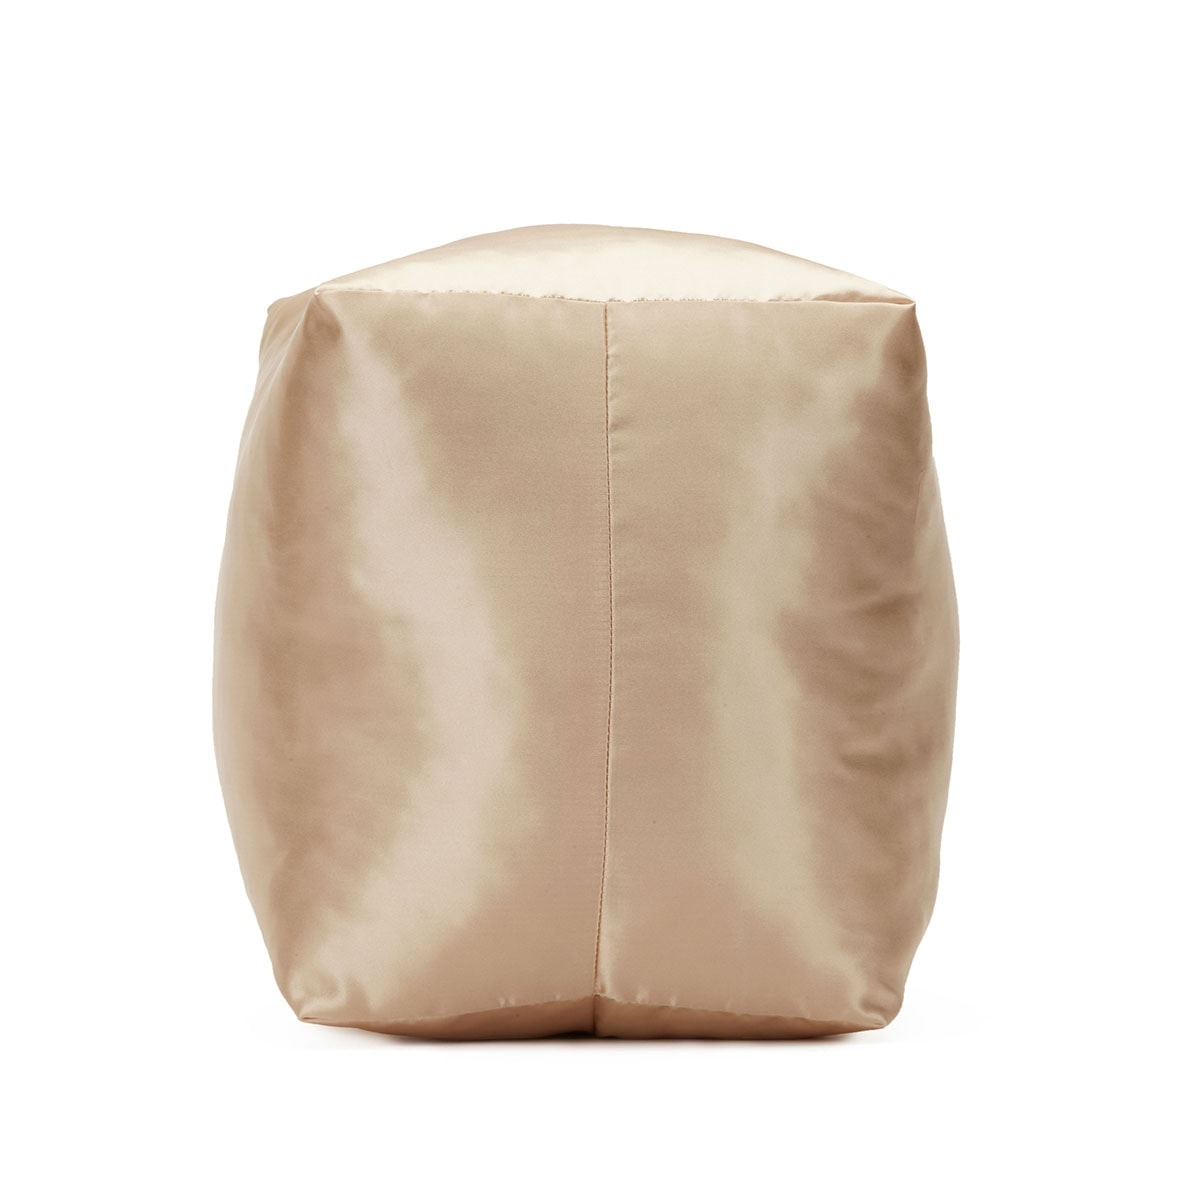 Purse Pillow for Hermes Bolide Bag Models, Bag Shaper Pillow